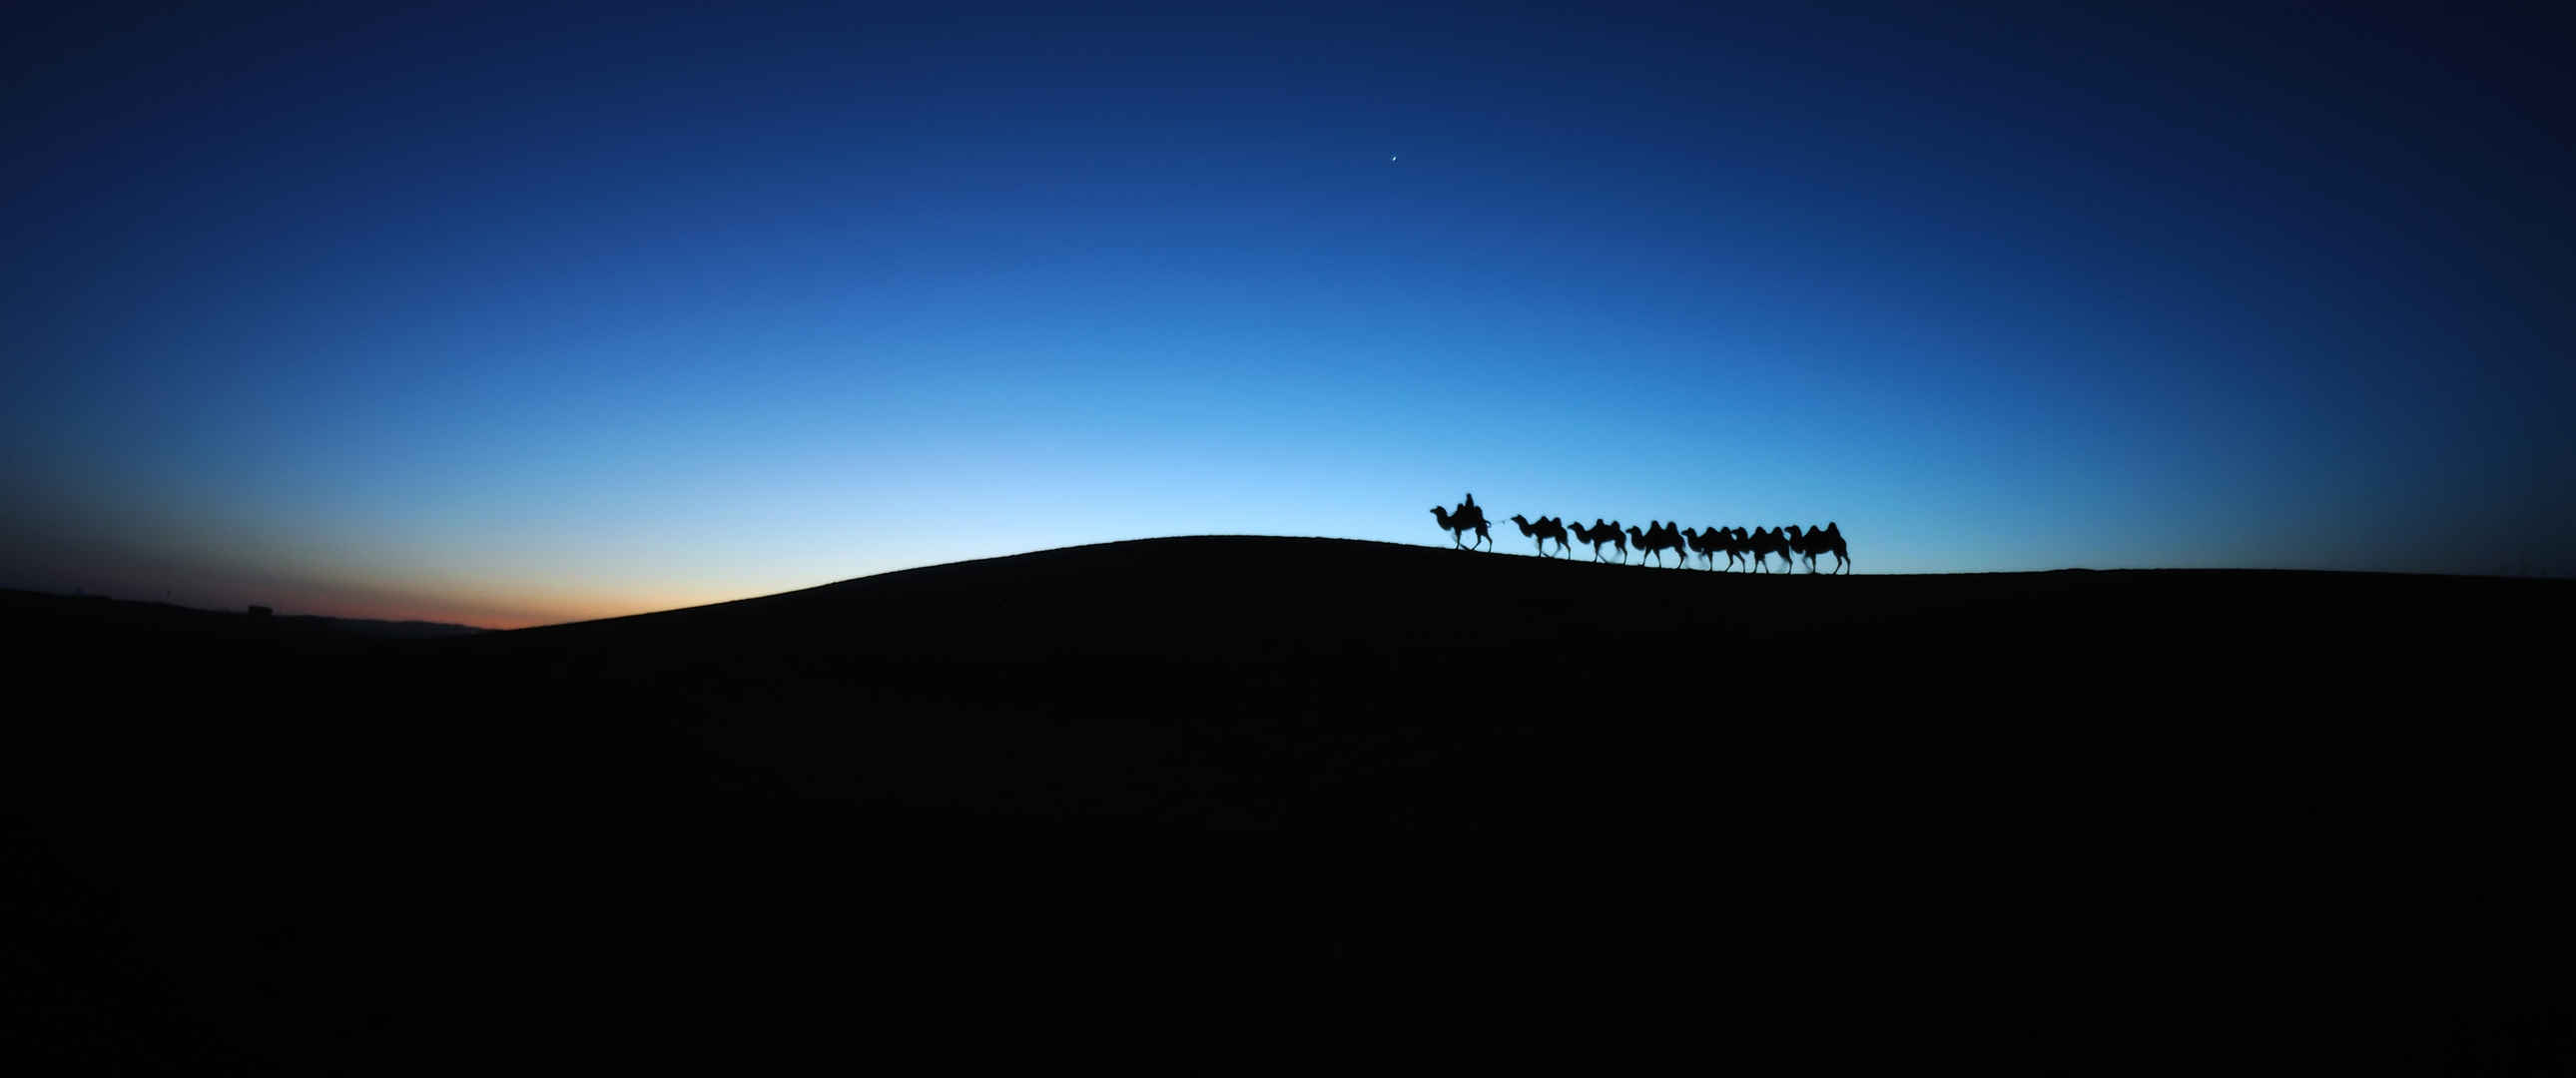 沙漠黎明骆驼车队3440x1440壁纸-